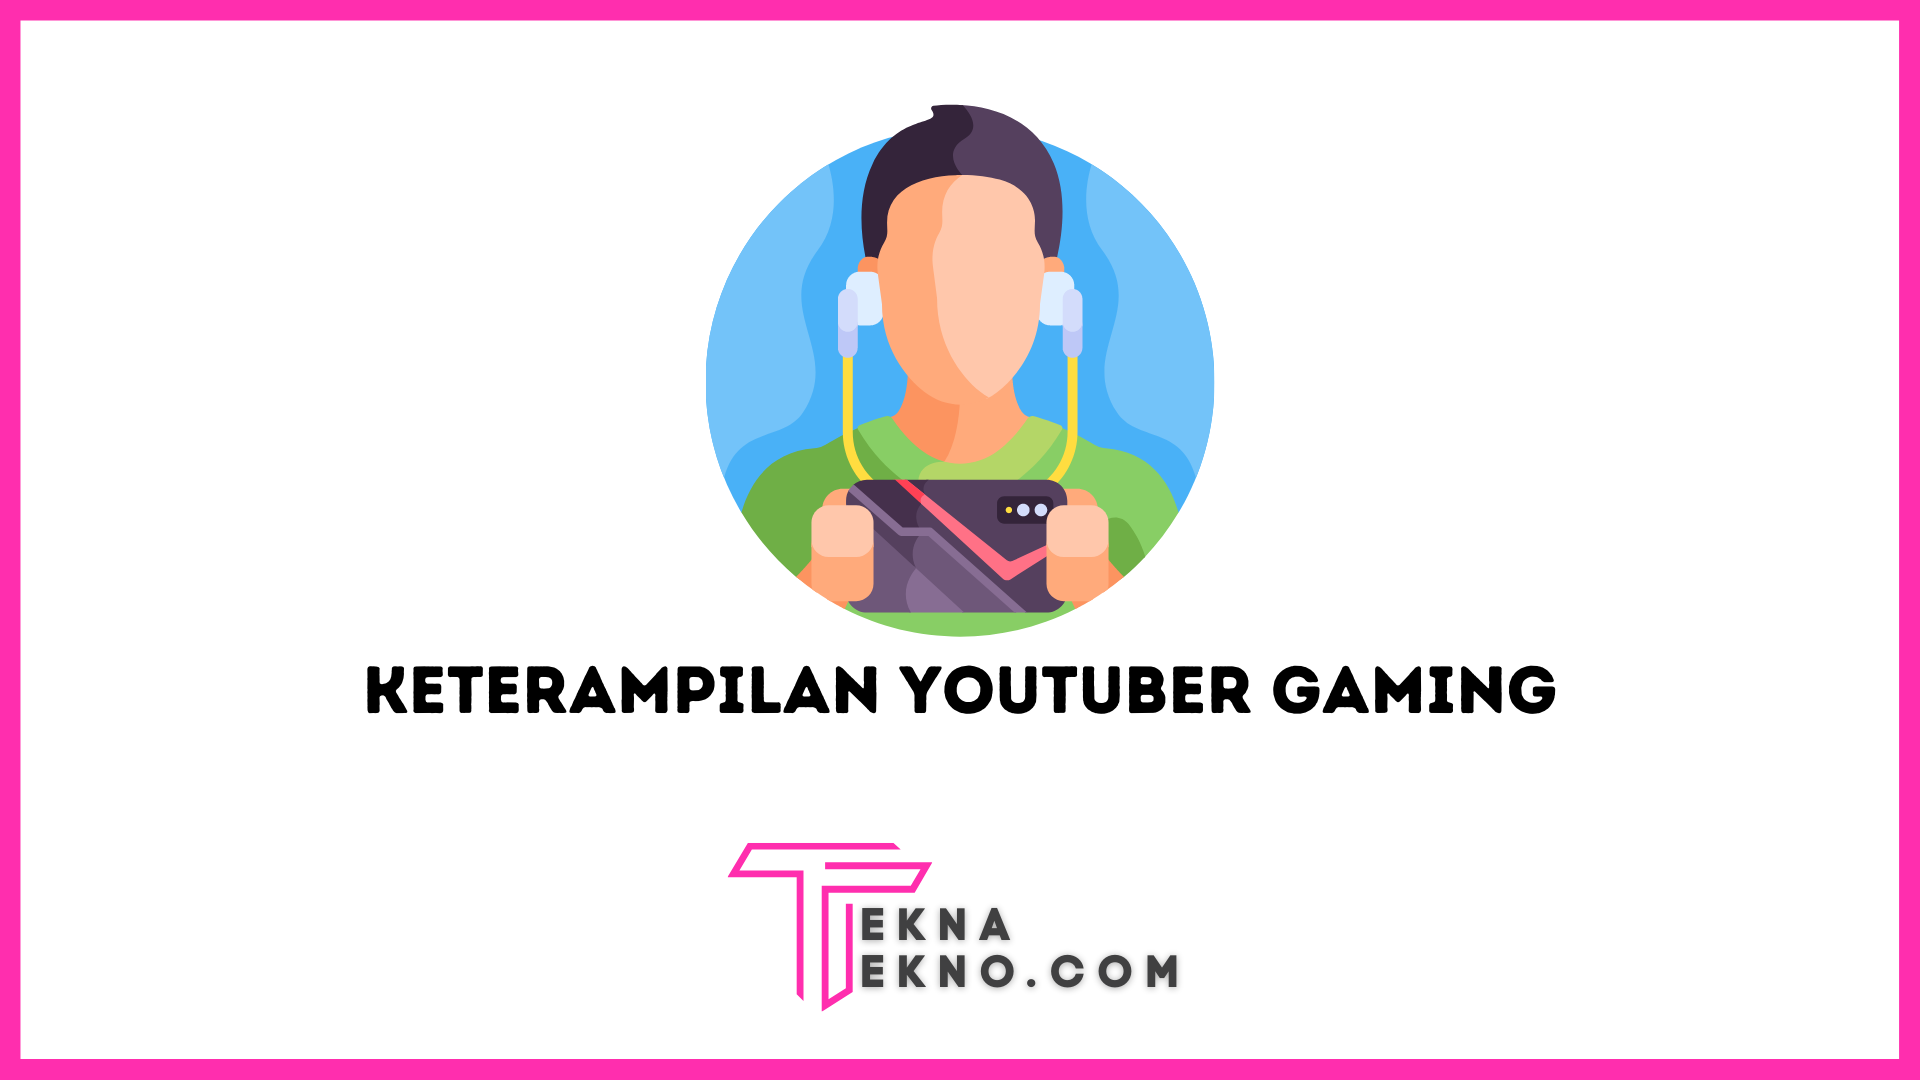 Youtuber Gaming: Keterampilan yang Dibutuhkan